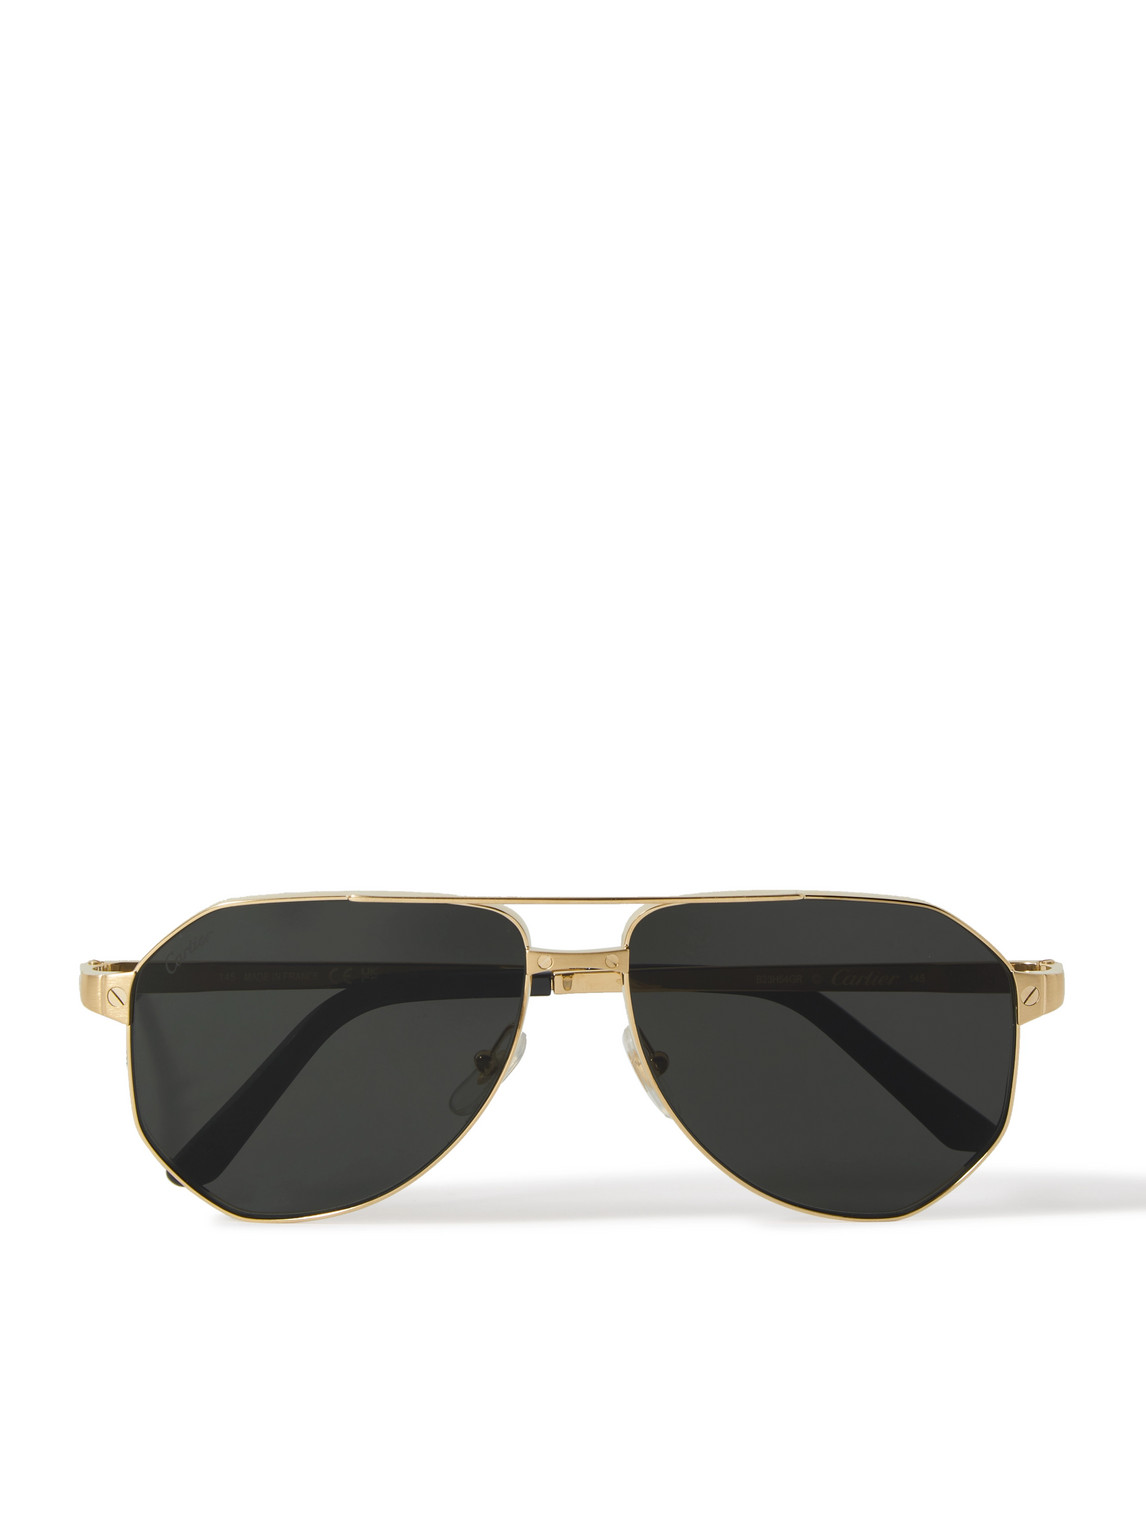 Cartier Eyewear - Santos de Cartier Aviator-Style Gold-Tone Sunglasses - Men - Gold von Cartier Eyewear